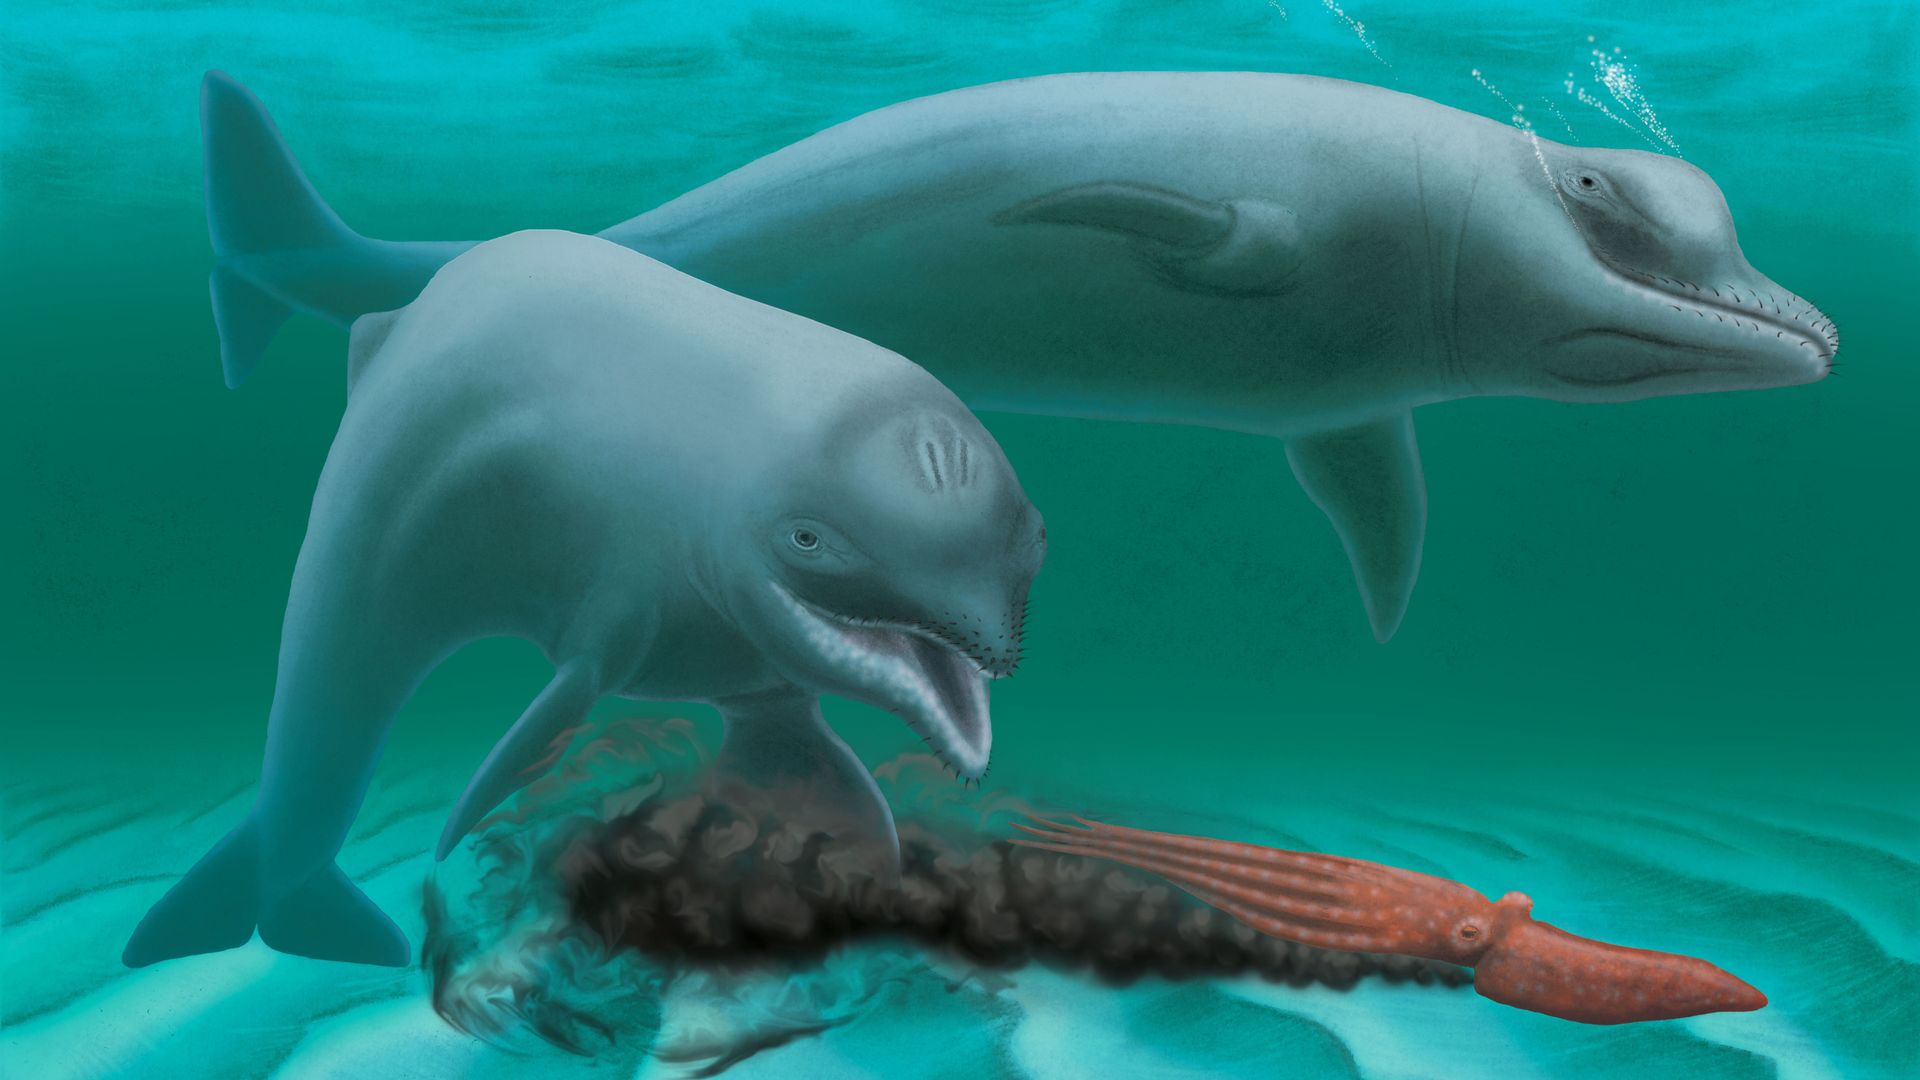 Le curieux animal, baptisé "Inermorostrum xenops", a été découvert par un plongeur dans la rivière Wando en Caroline du Sud aux Etats-unis.